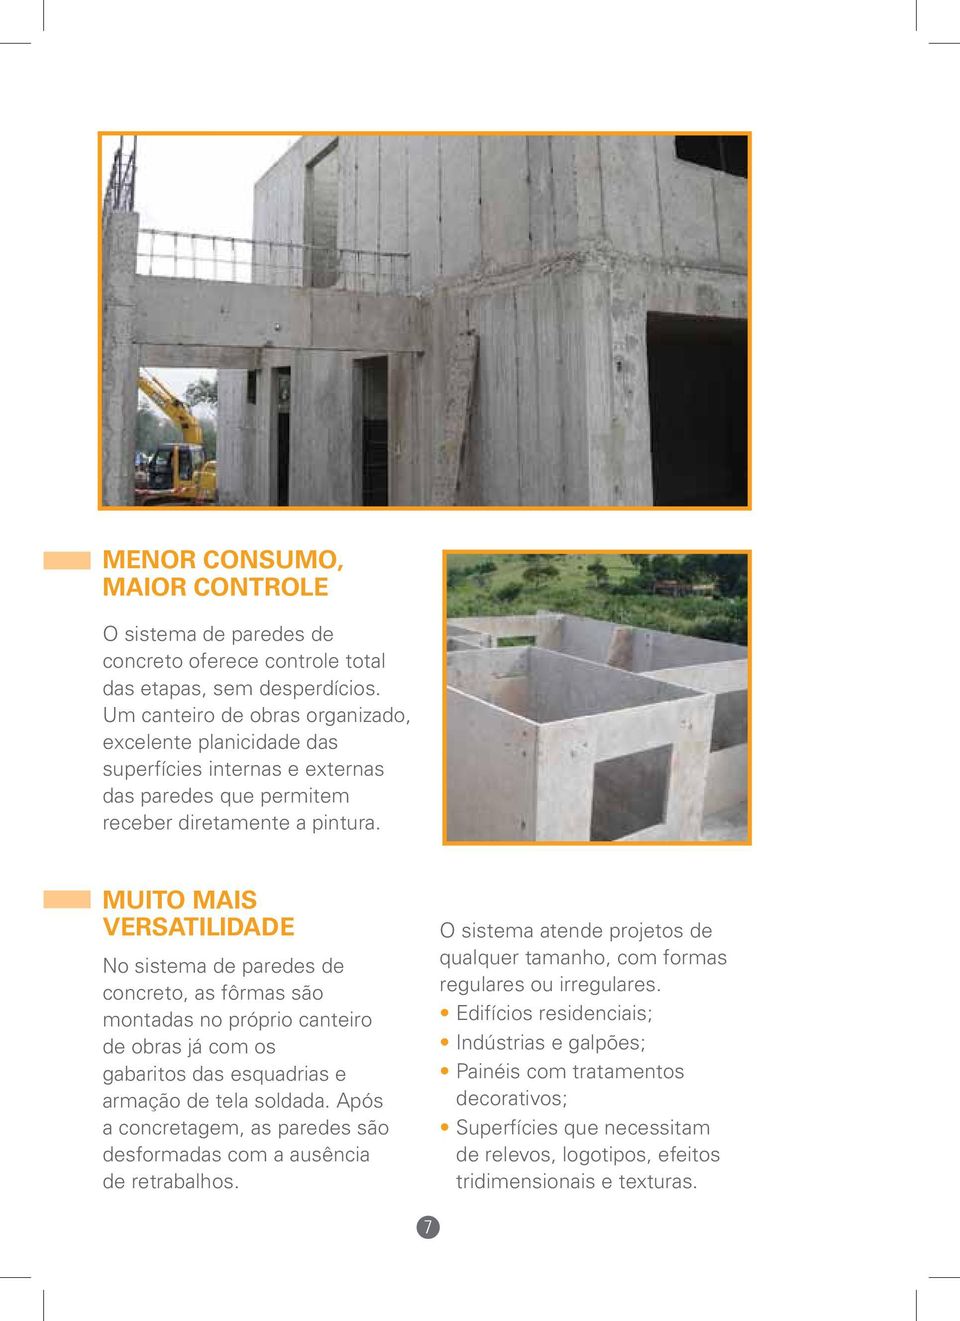 Muito mais versatilidade No sistema de paredes de concreto, as fôrmas são montadas no próprio canteiro de obras já com os gabaritos das esquadrias e armação de tela soldada.